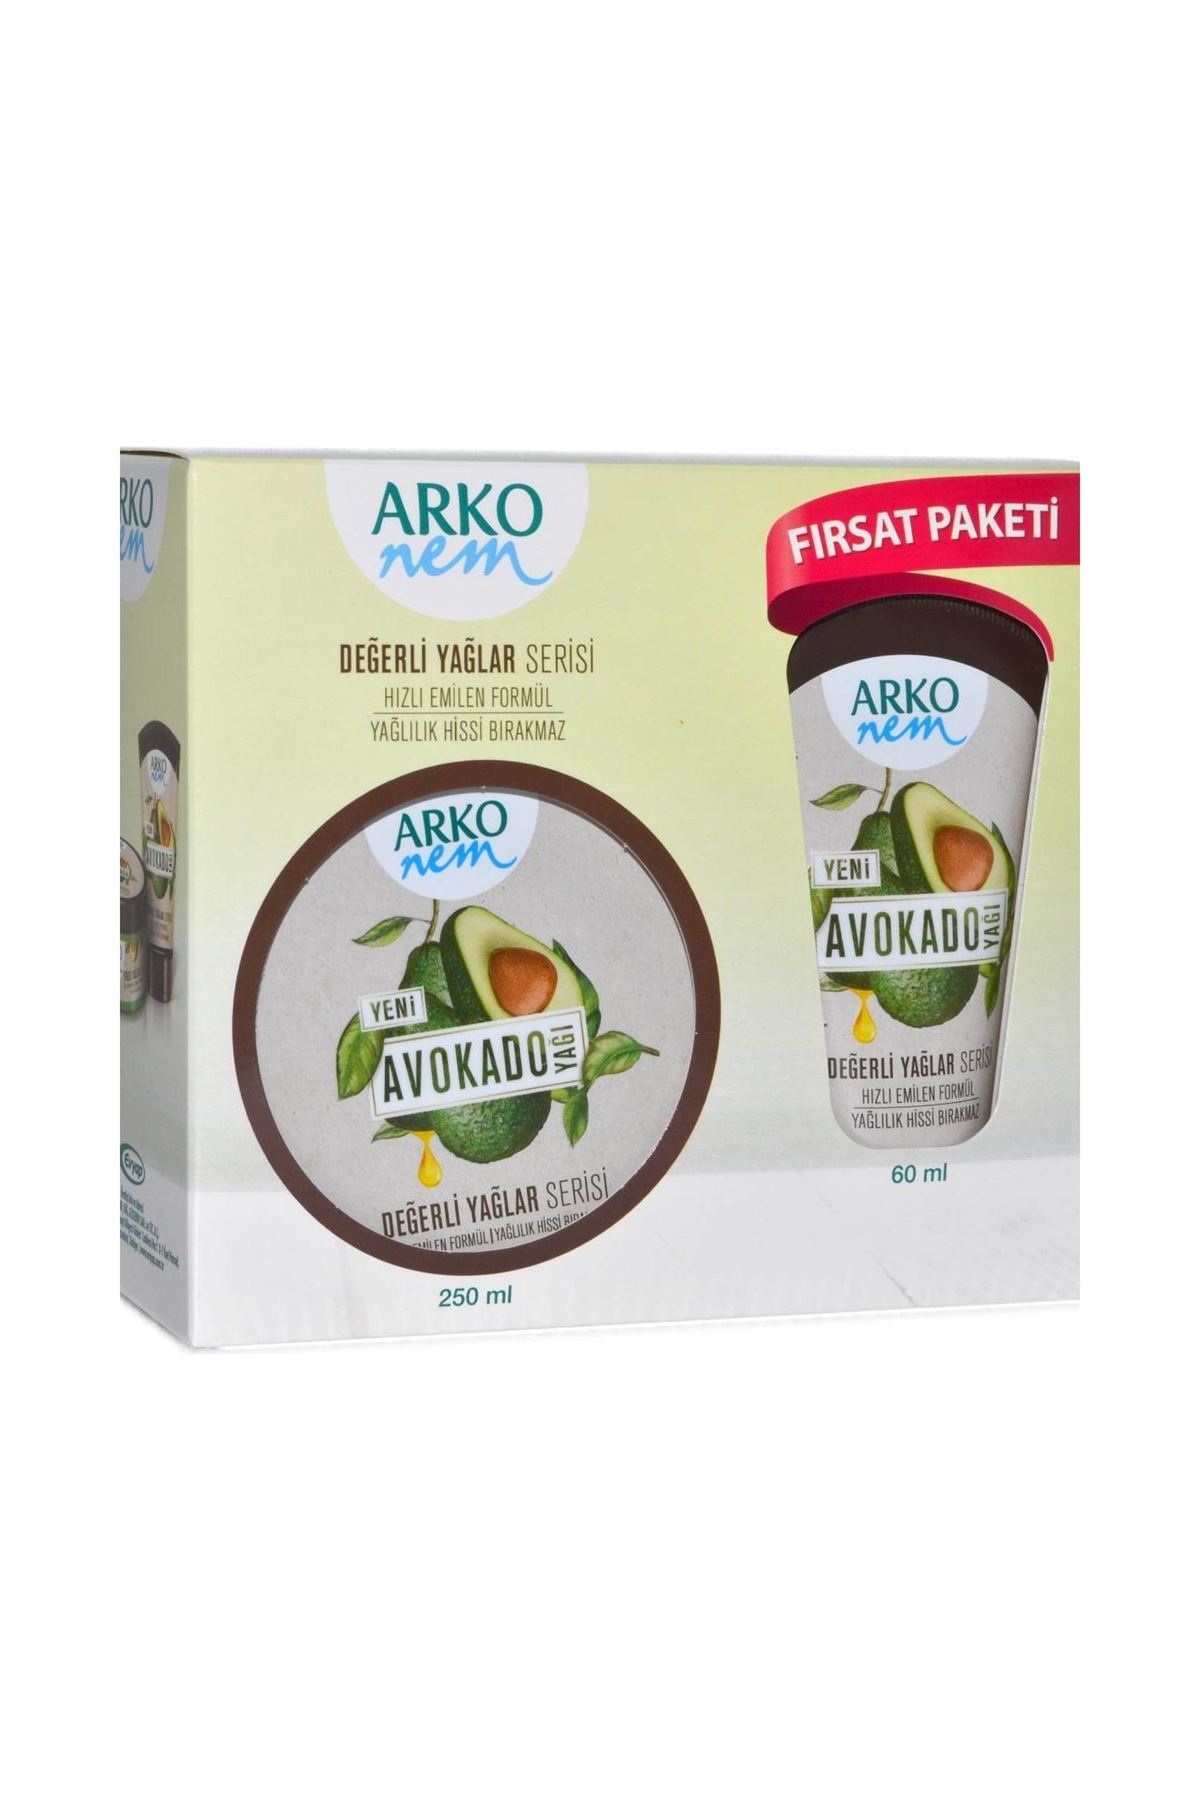 Arko Nem Krem 250 ml + 60 ml Fırsat Paketi Avokado Yağlı